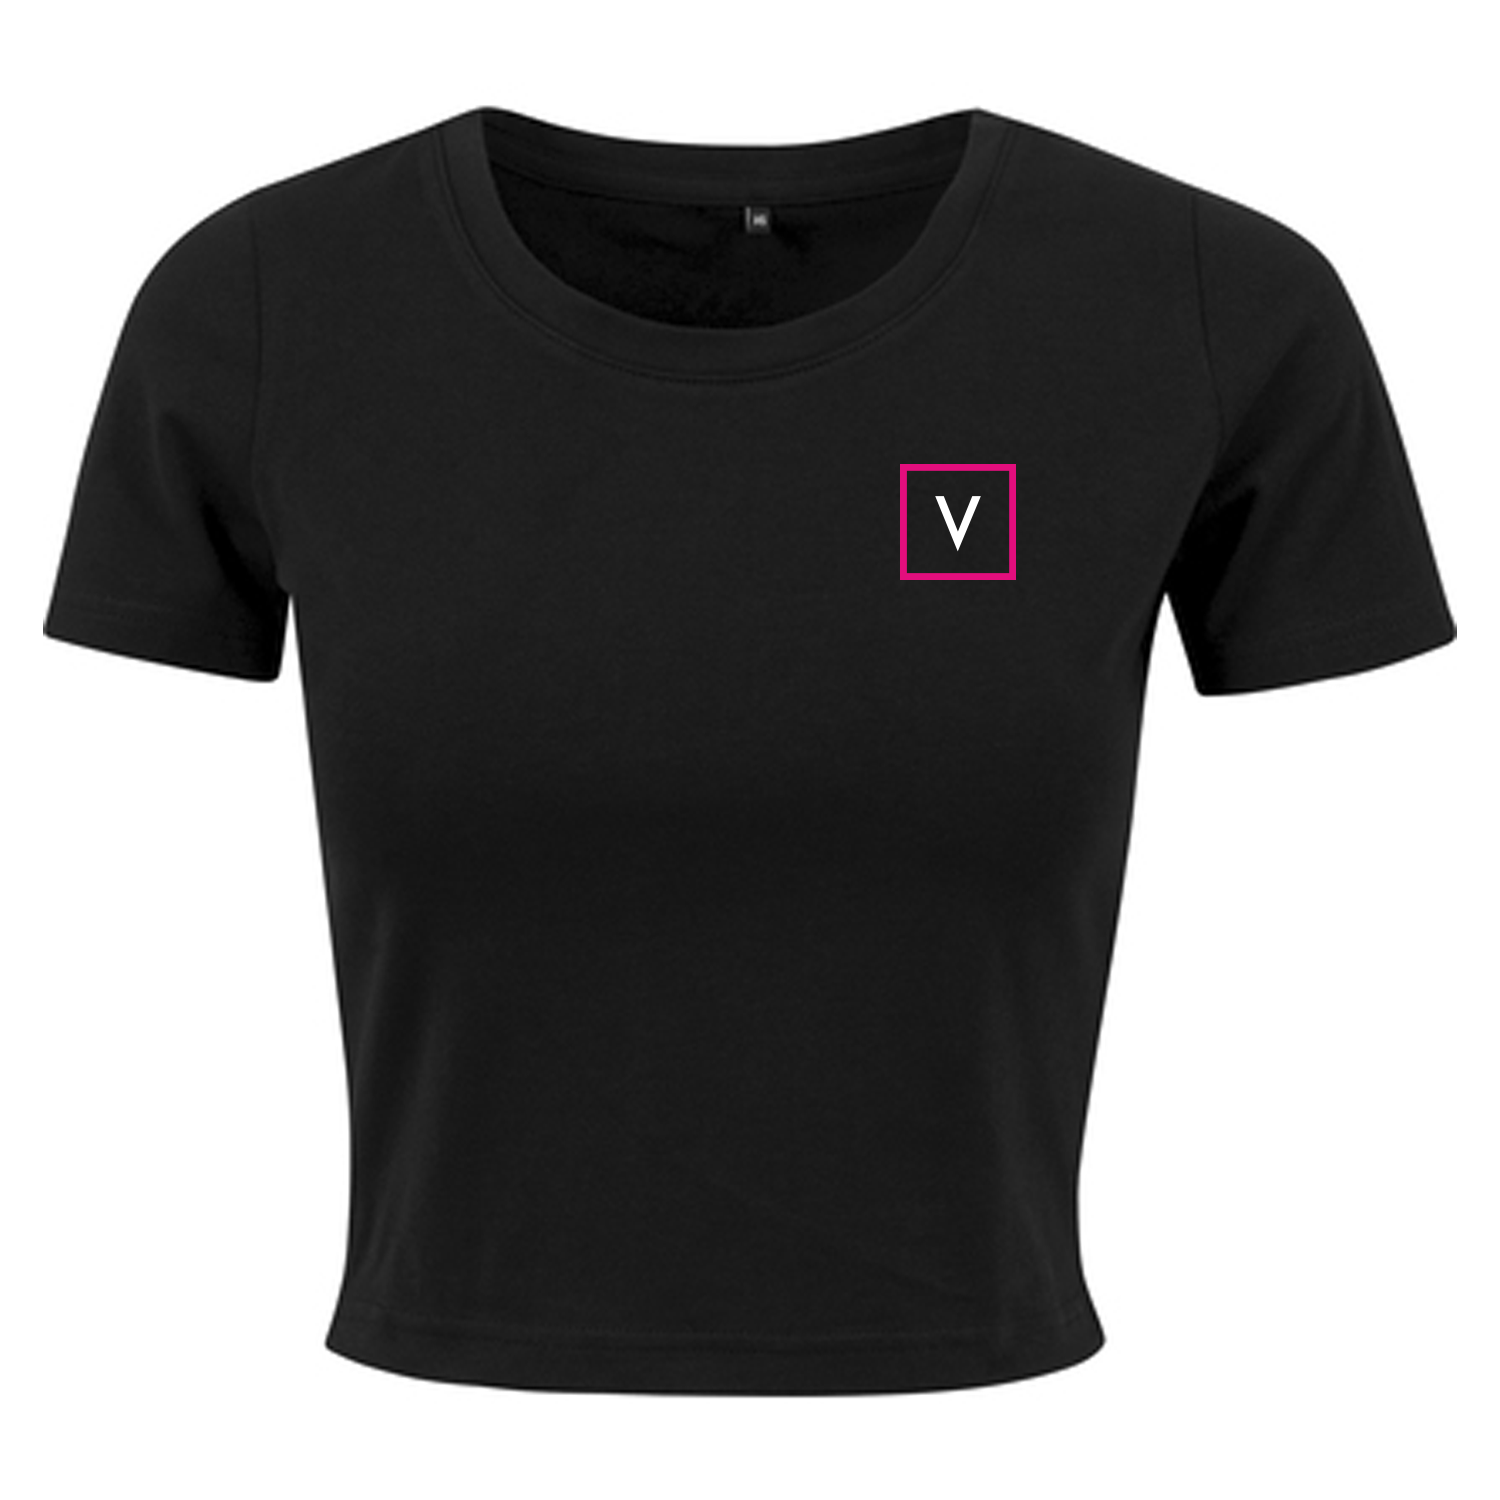 VENUS Girl's Cropped Top "V" - Schwarz/Weiß/Pink